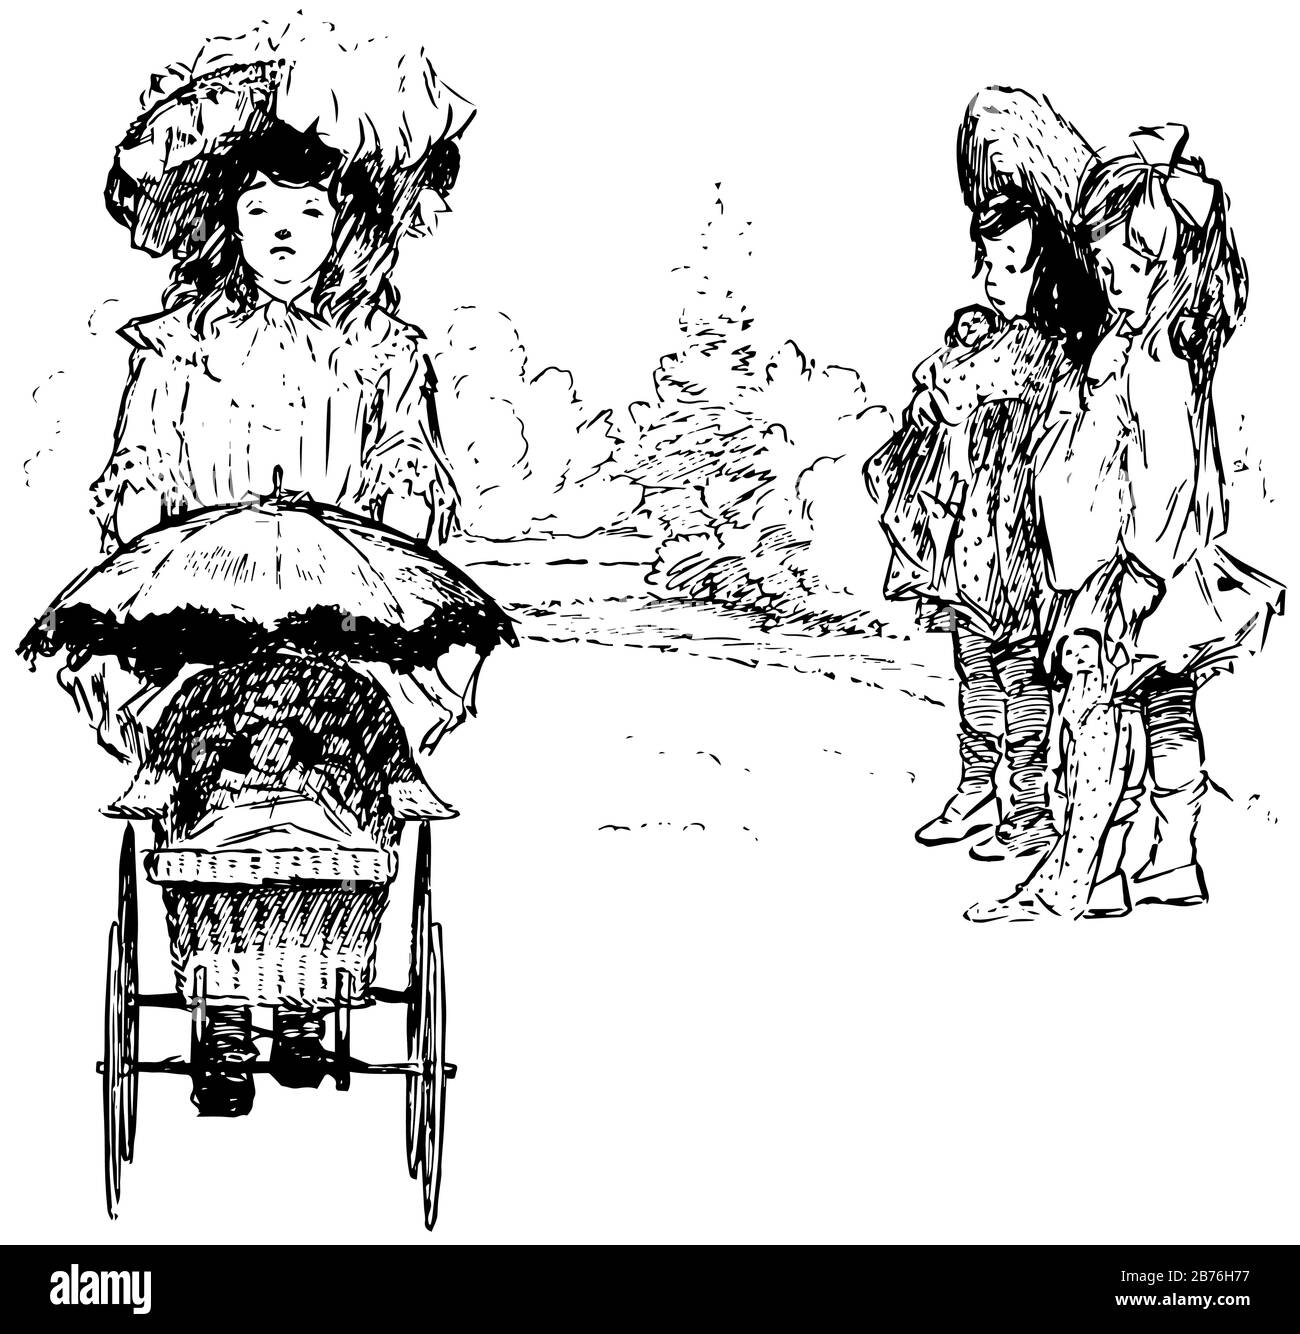 Joe's Bee-Sting, diese Szene zeigt drei kleine Mädchen mit ihren Puppen, ein Mädchen hielt Puppe im Kinderwagen und ging, andere zwei Mädchen halten Puppen in ha Stock Vektor